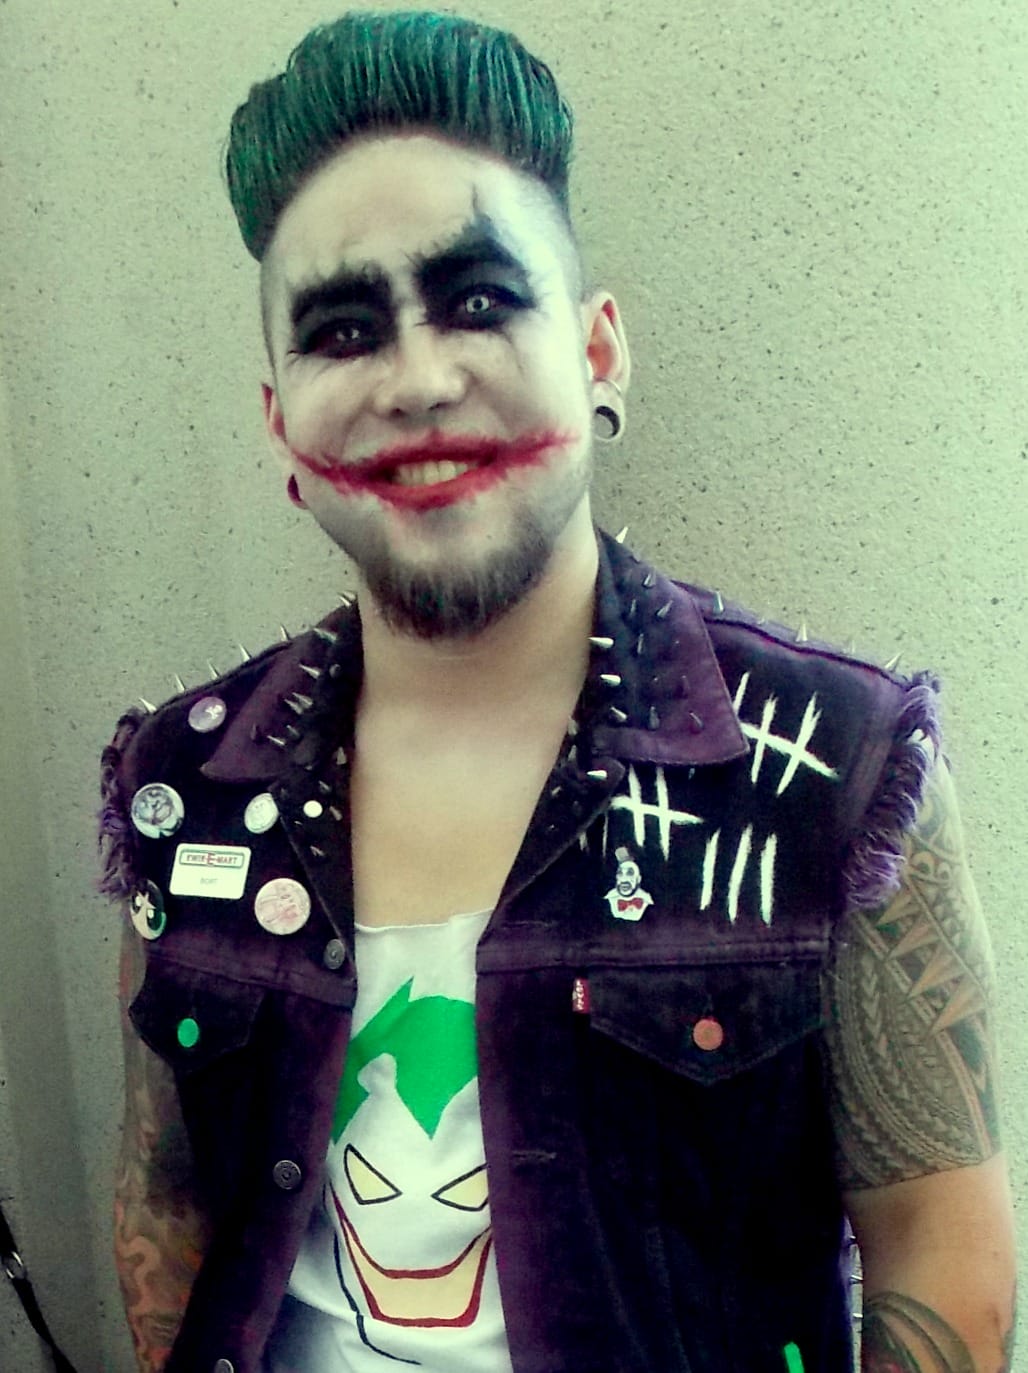 Punk Joker